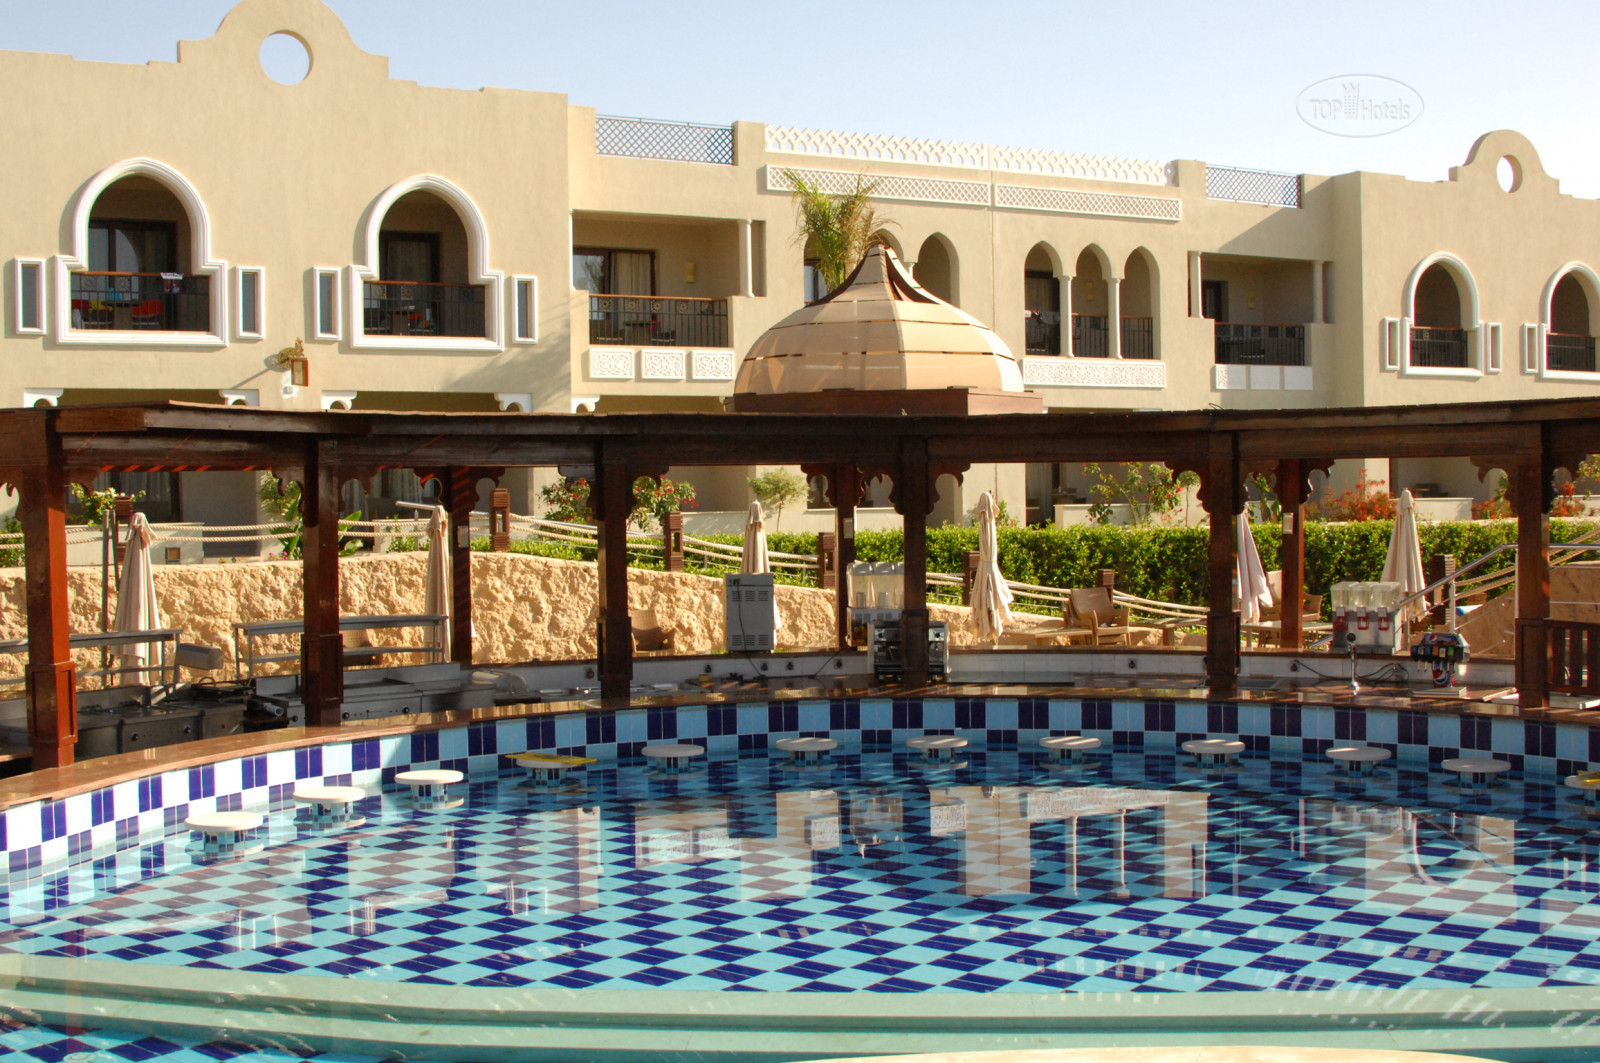 Санрайз арабиан бич резорт шарм. Египет отель Санрайз Арабиан Бич. Sunrise Arabian Beach Resort - Grand select 5*. Sunrise Arabian Beach Resort 5 Египет Sharm el Sheikh.